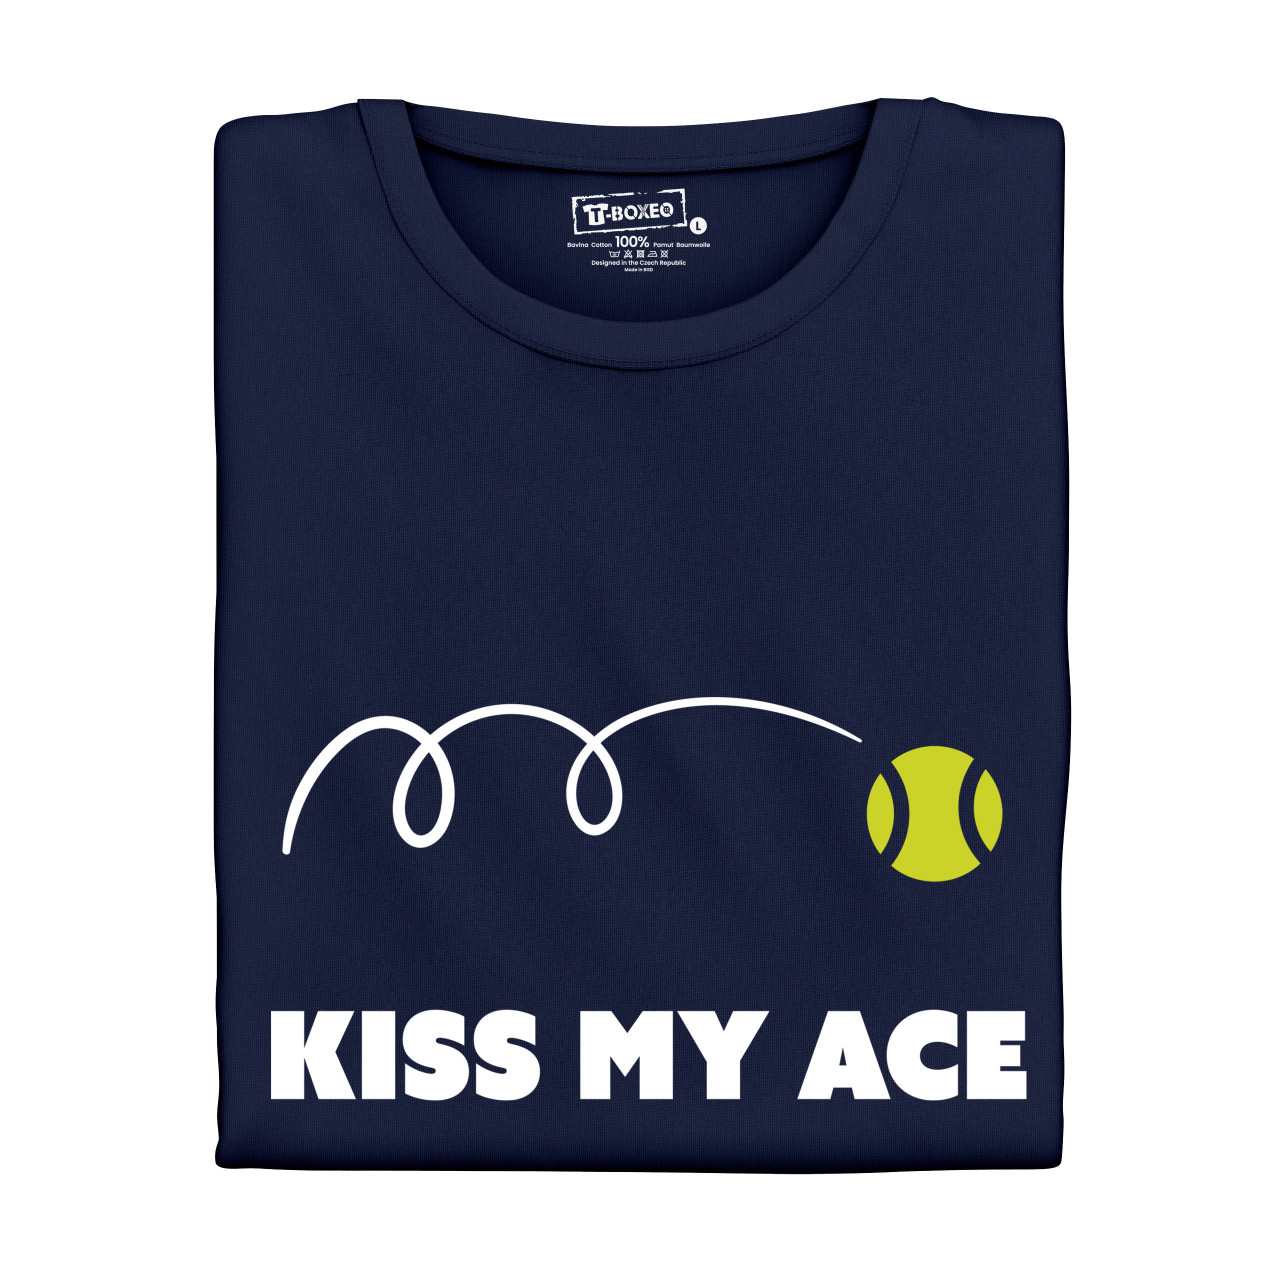 Pánské tričko s potiskem "Kiss my ace"